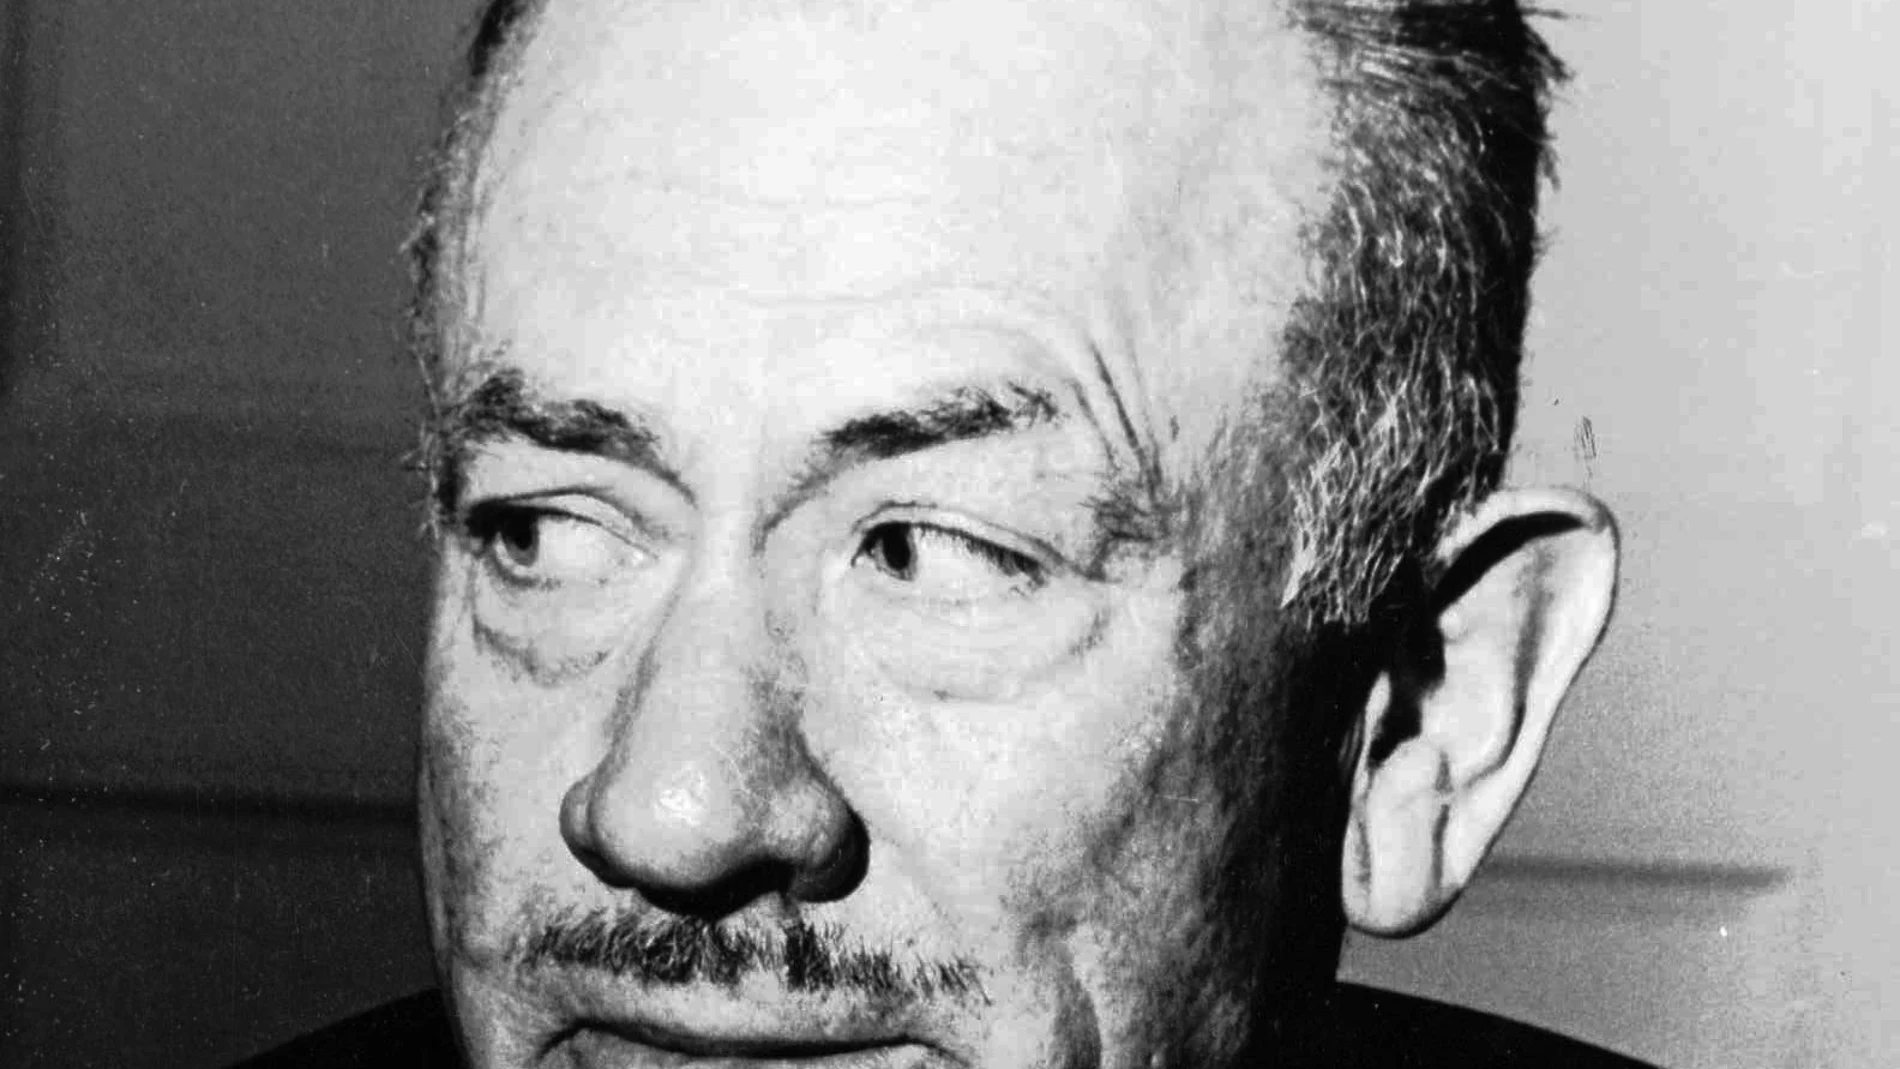 Steinbeck reflexionó en sus libros sobre las injusticias sociales y las clases desfavorecidas